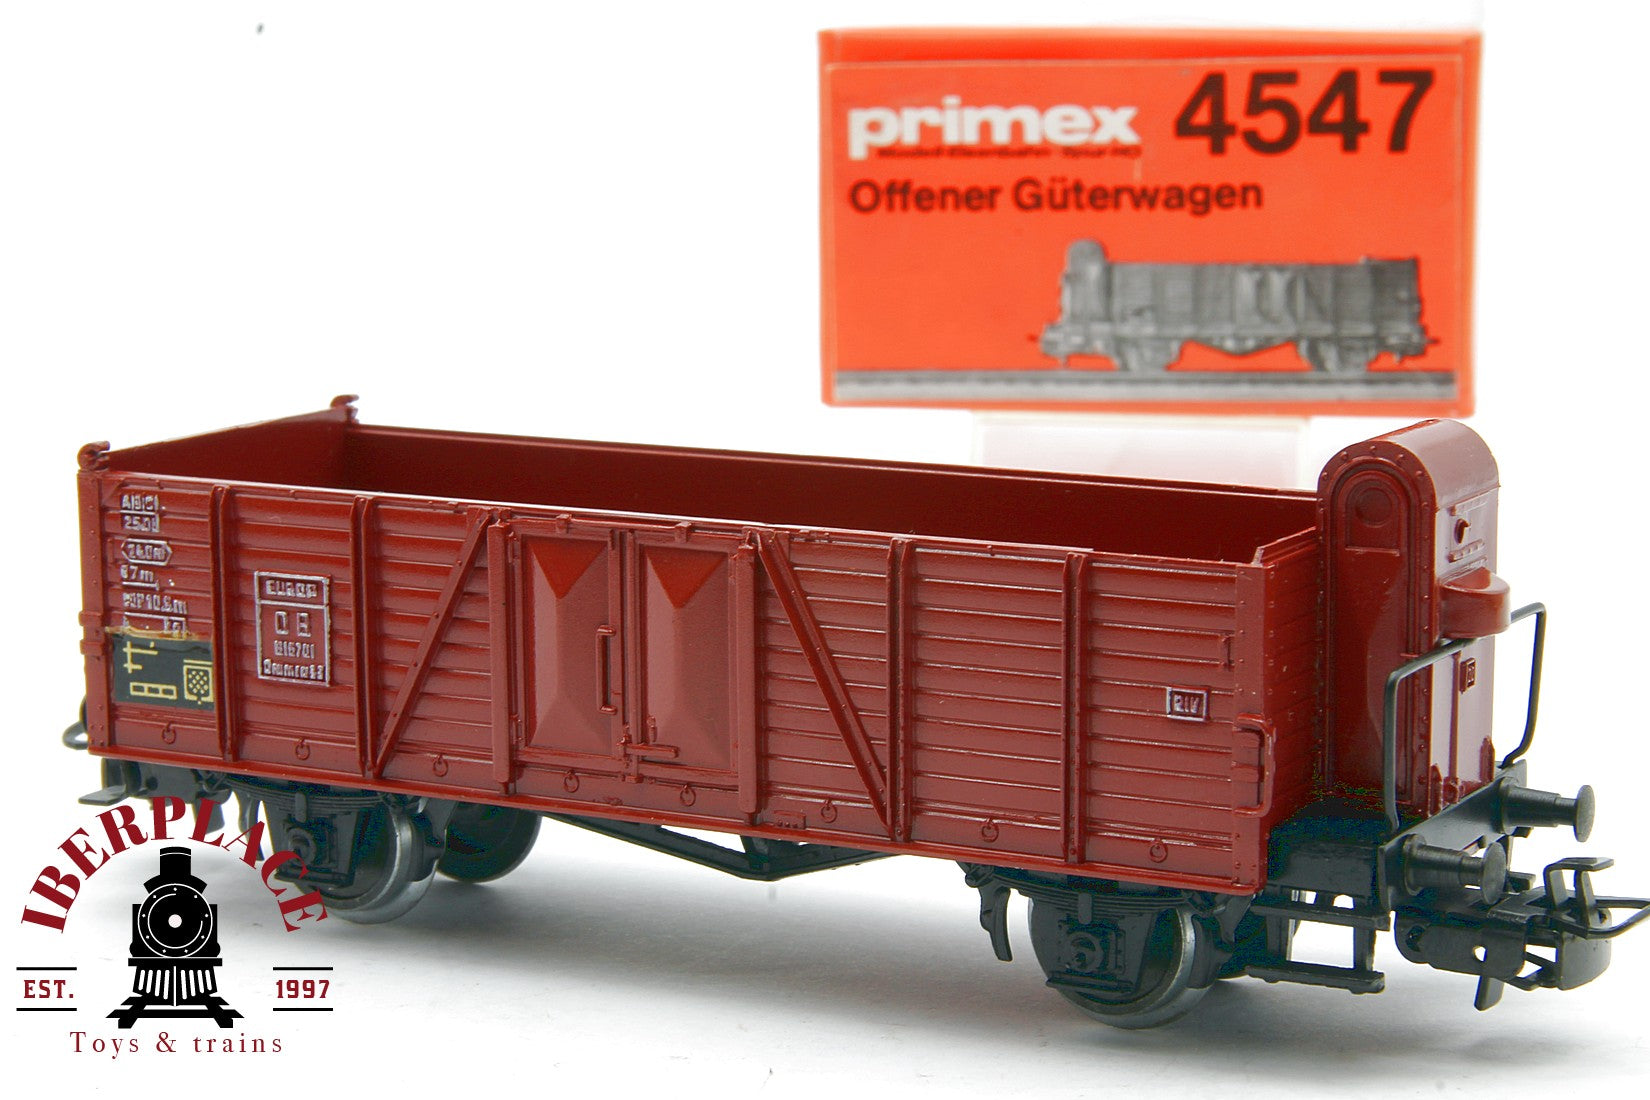 Primex 4547 vagón mercancías EUROP DB 816 701 H0 escala 1:87 ho 00